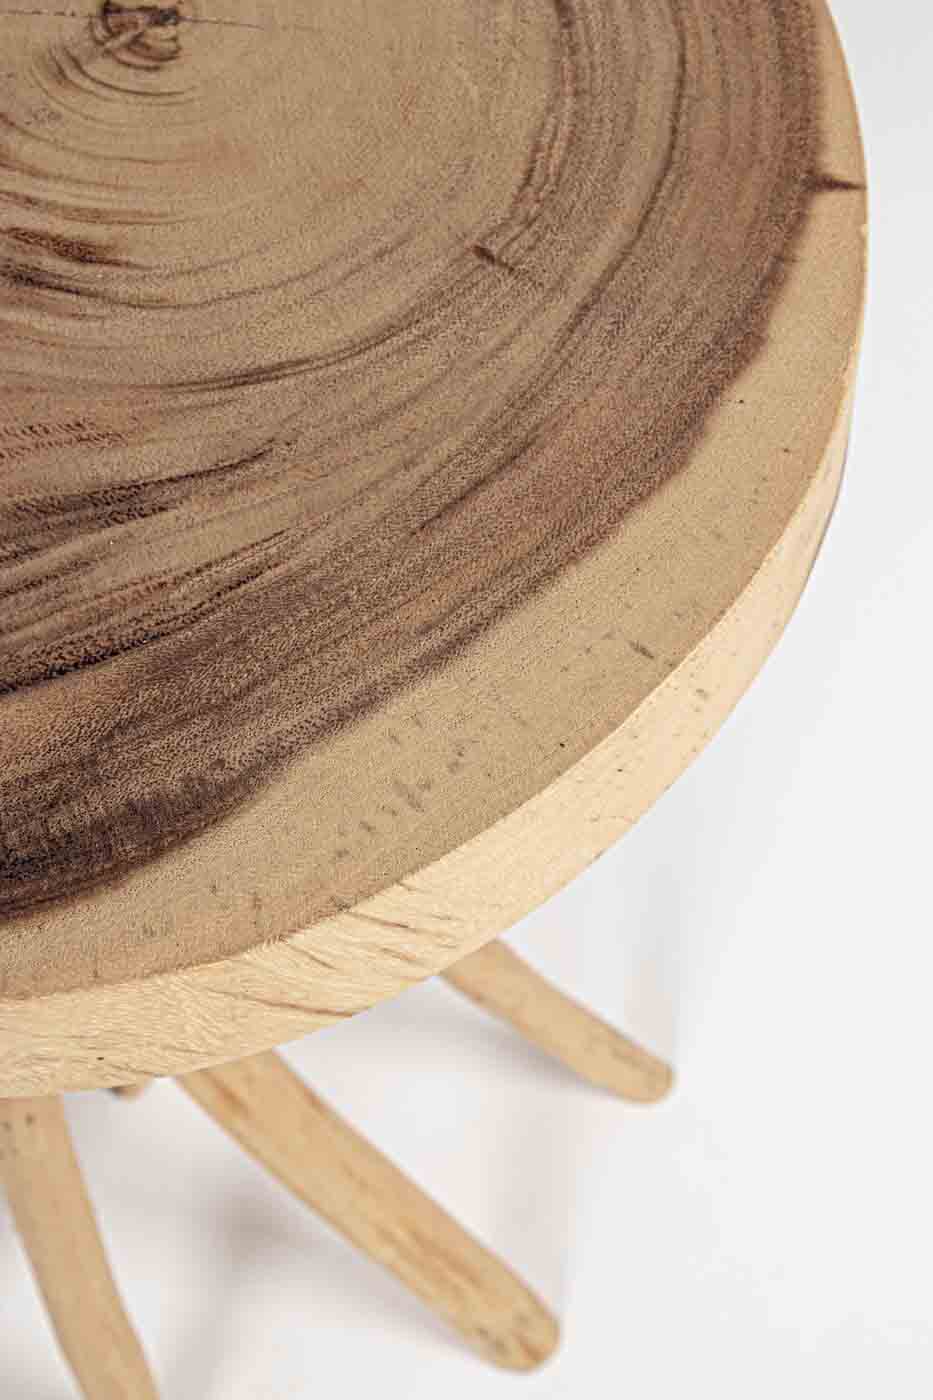 Die Tischplatte des Couchtisches Solidad wurde aus Mungur-Holz gefertigt, dadurch wird jedes Stück zu einem Unikat. Die Beine wurde aus Teakholz hergestellt, welche dem Tisch sein eigenes Design verleihen.